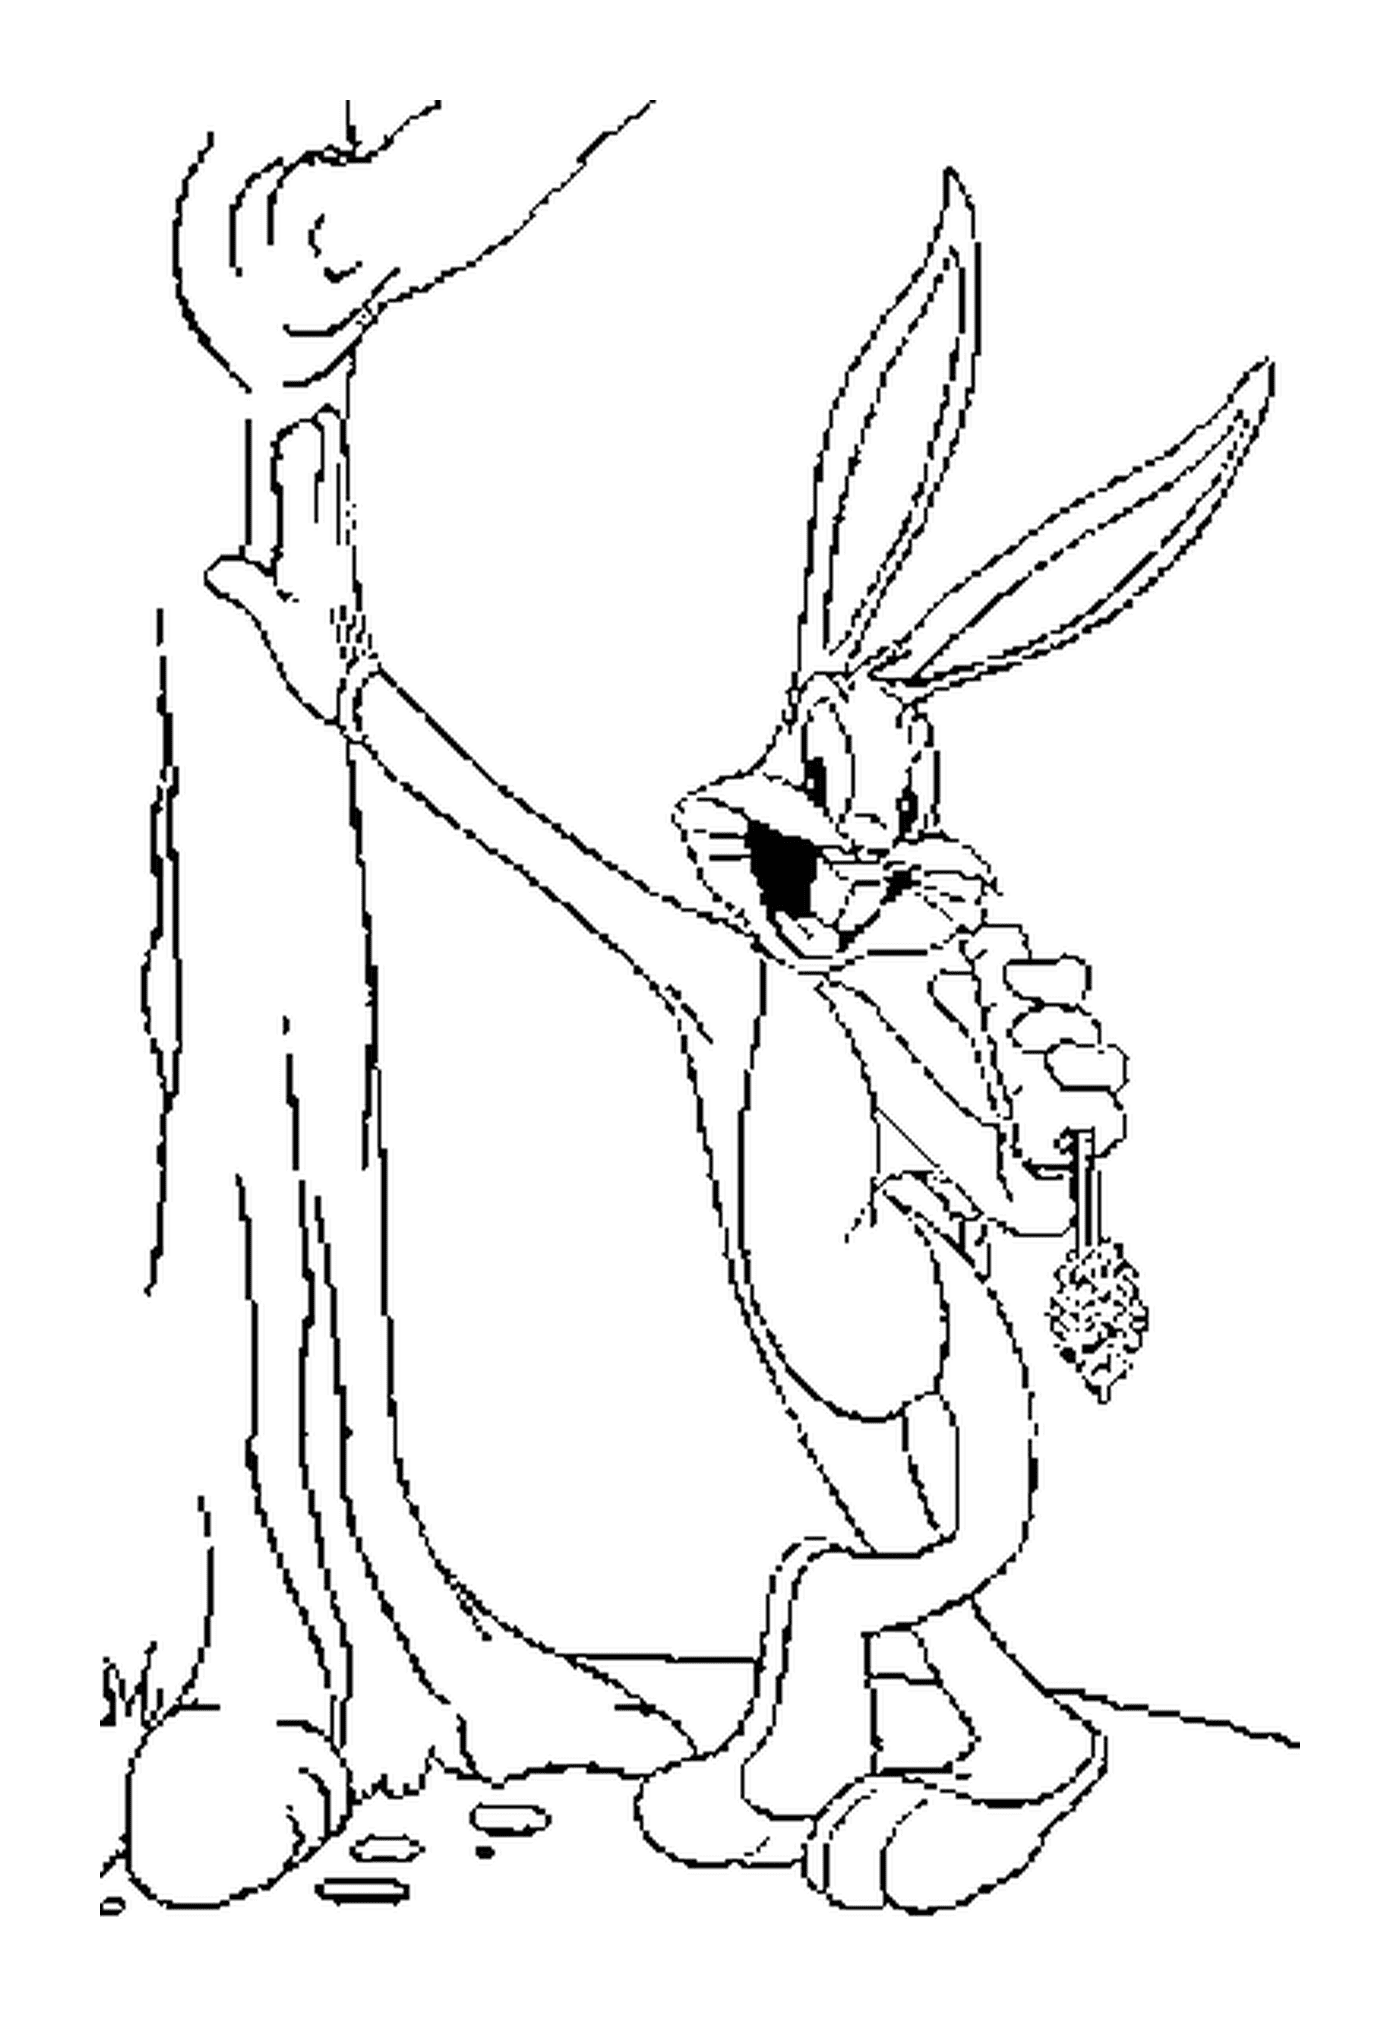  Bugs Bunny come una zanahoria junto a un árbol 